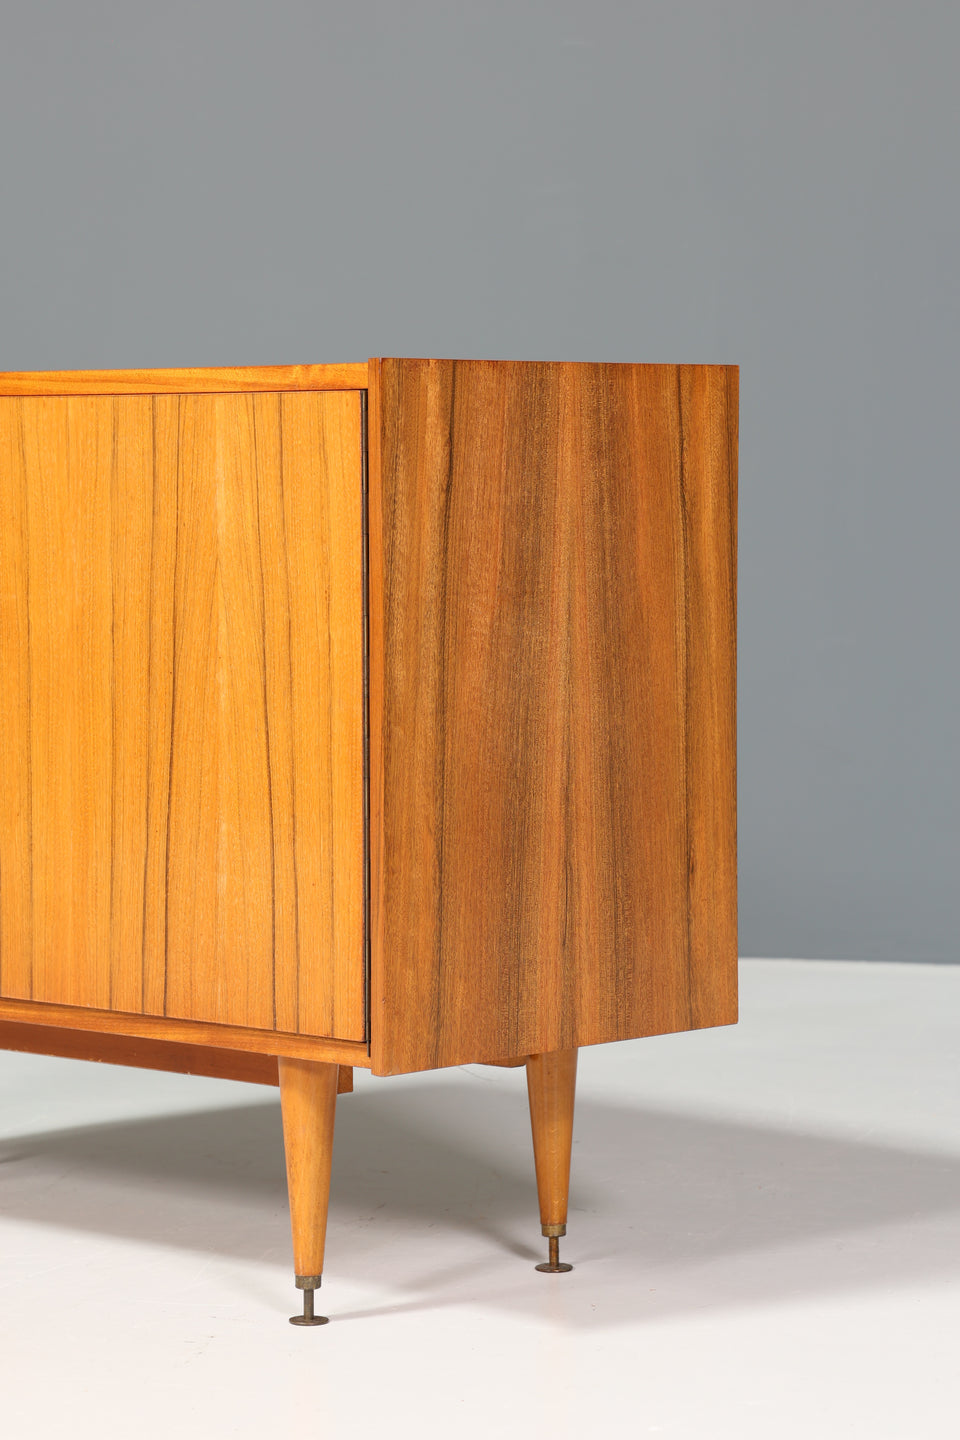 Wunderschöne Mid Century Kommode Vintage Holz Sideboard Retro Schrank 60er Jahre